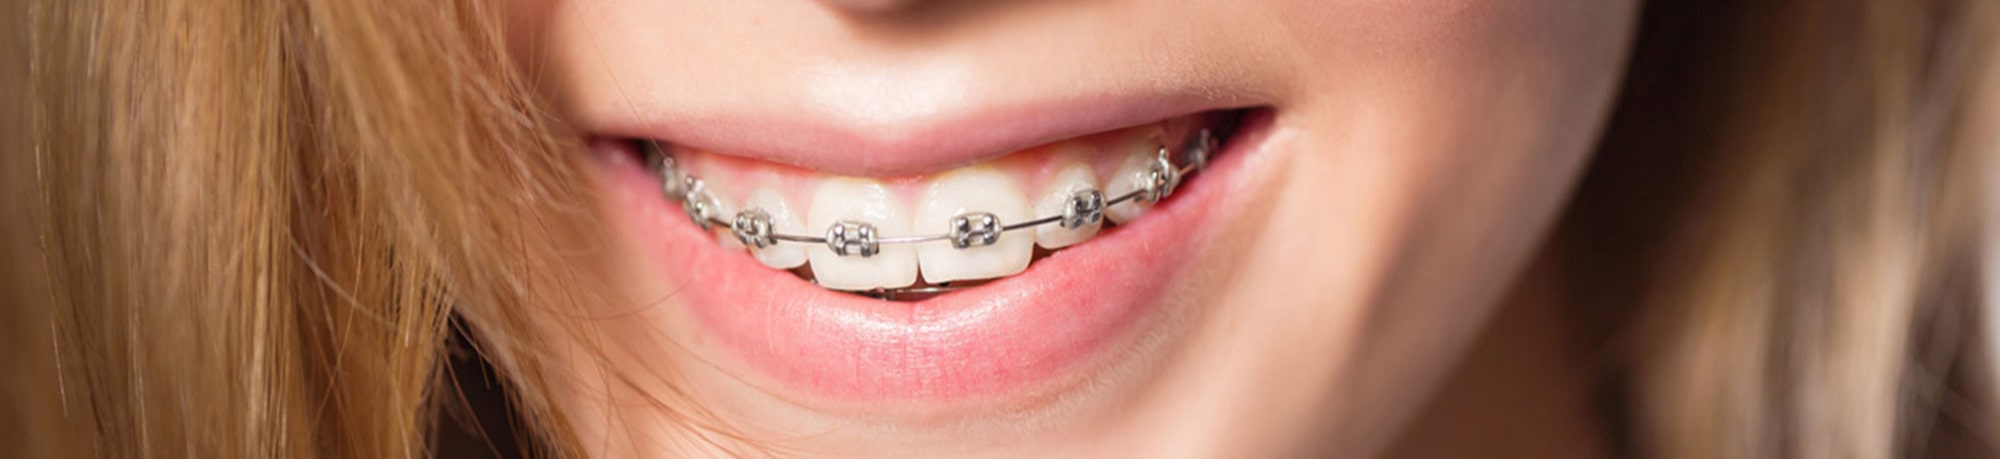 Всё об установке зубных брекетов: выбор системы, этапы, сроки лечения